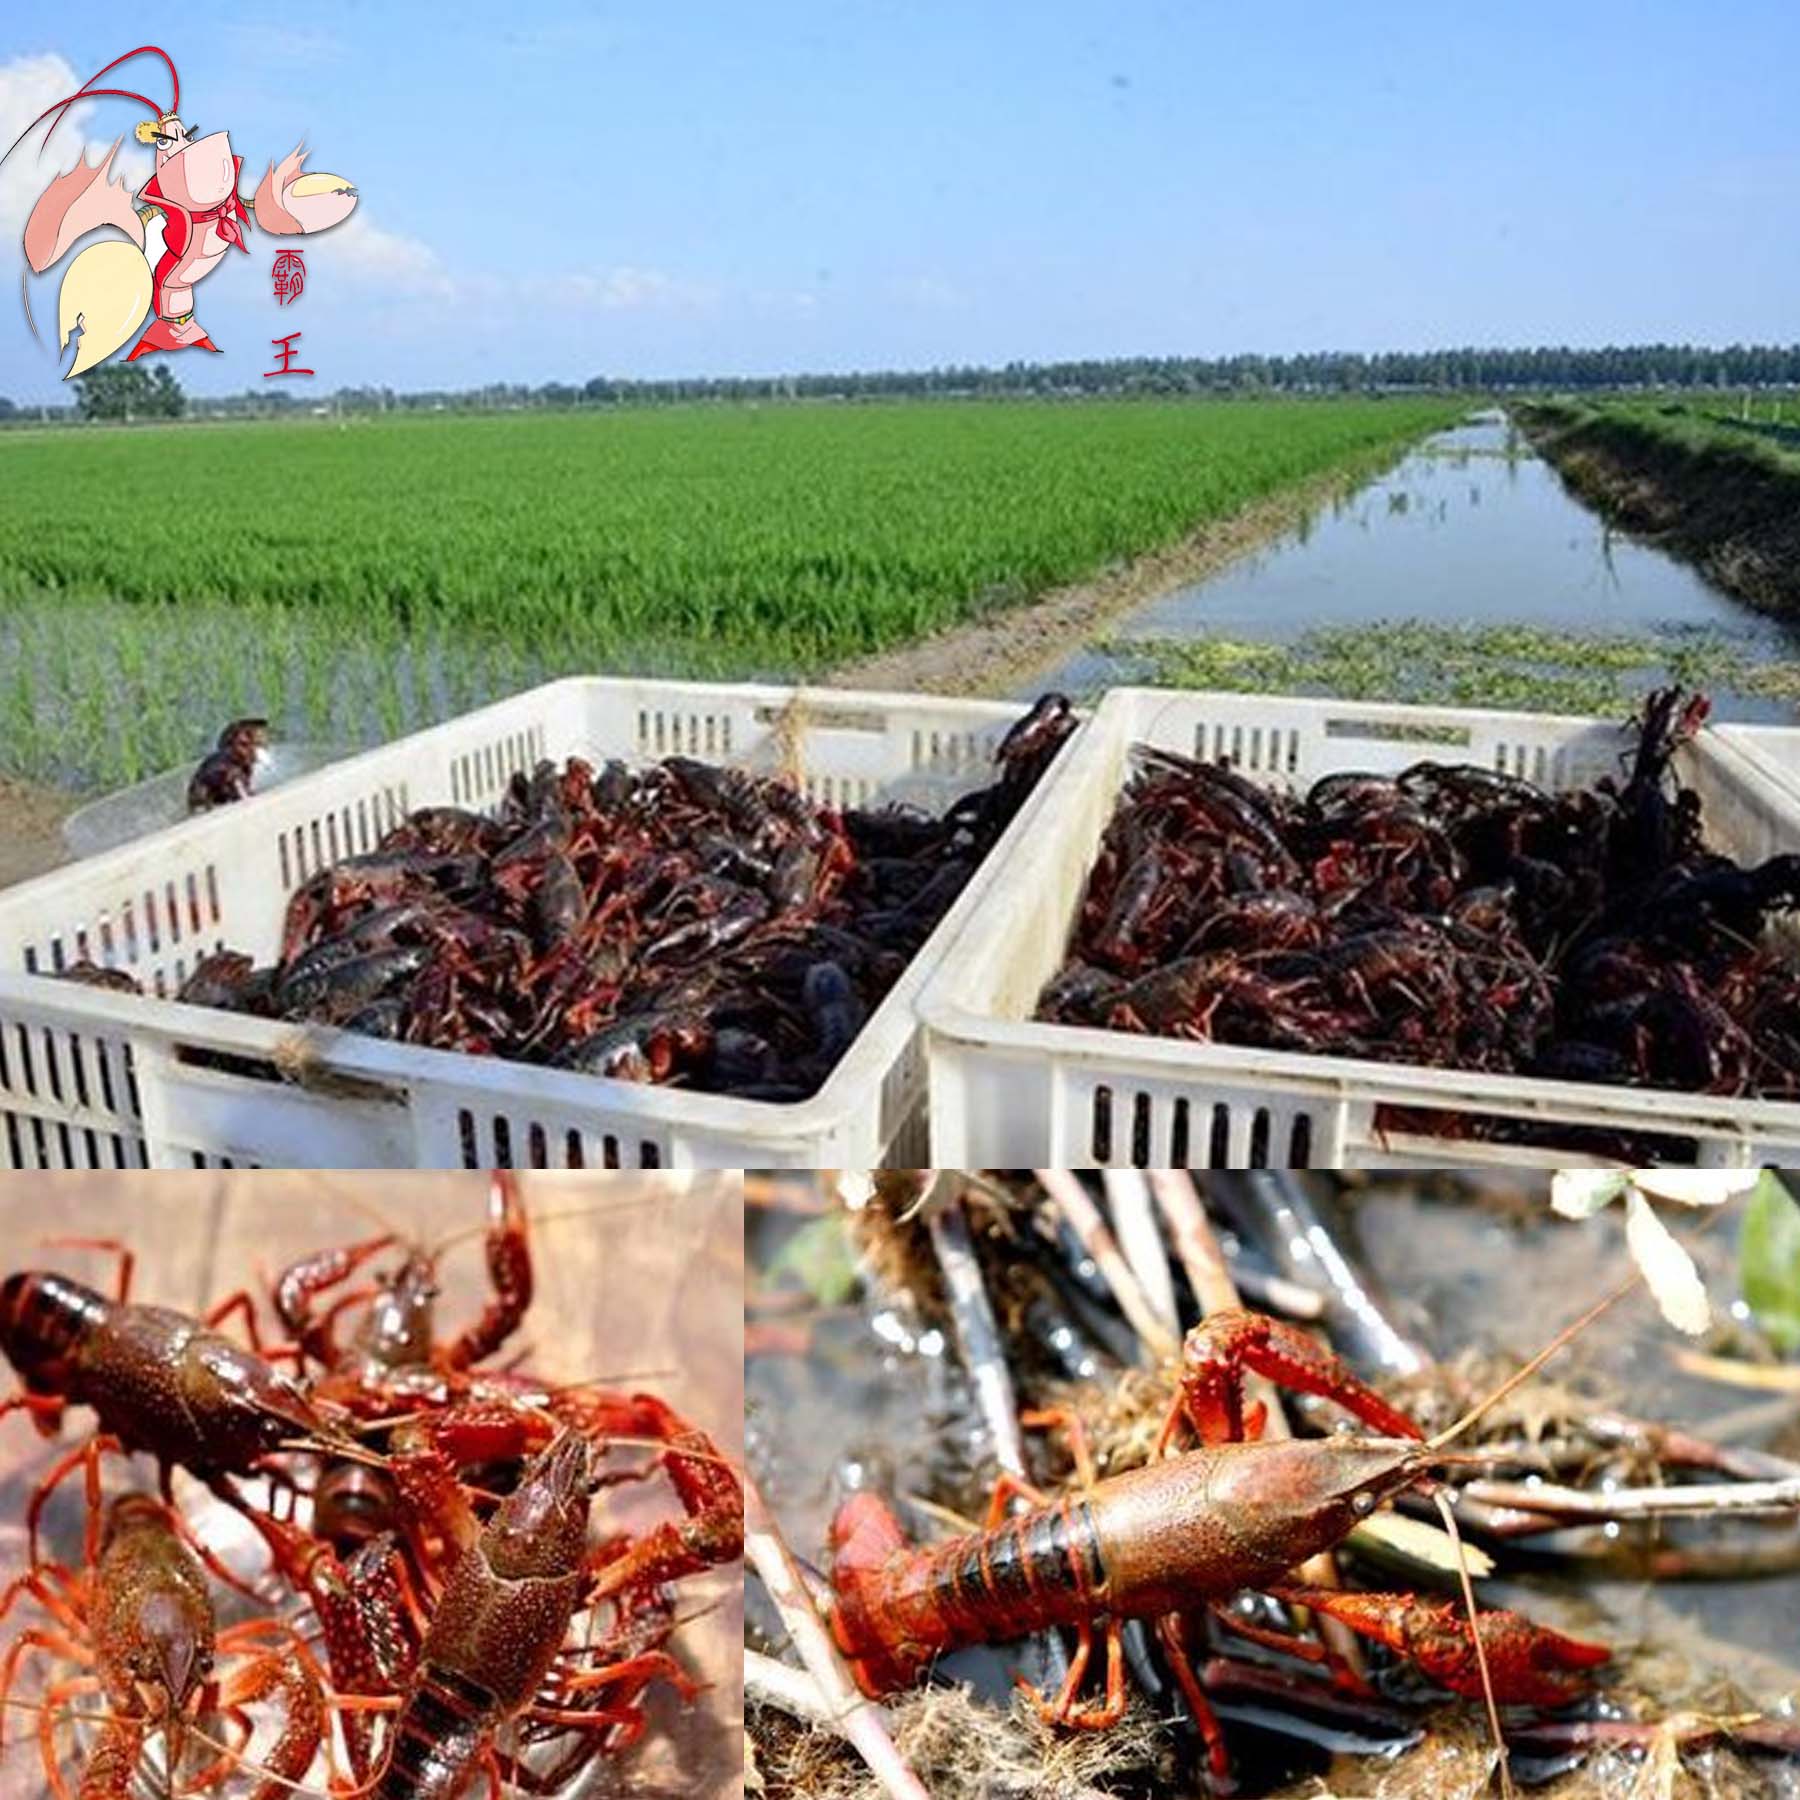 农村致富新项目小龙虾养殖公司全程提供技术支持保底价回收成品龙虾